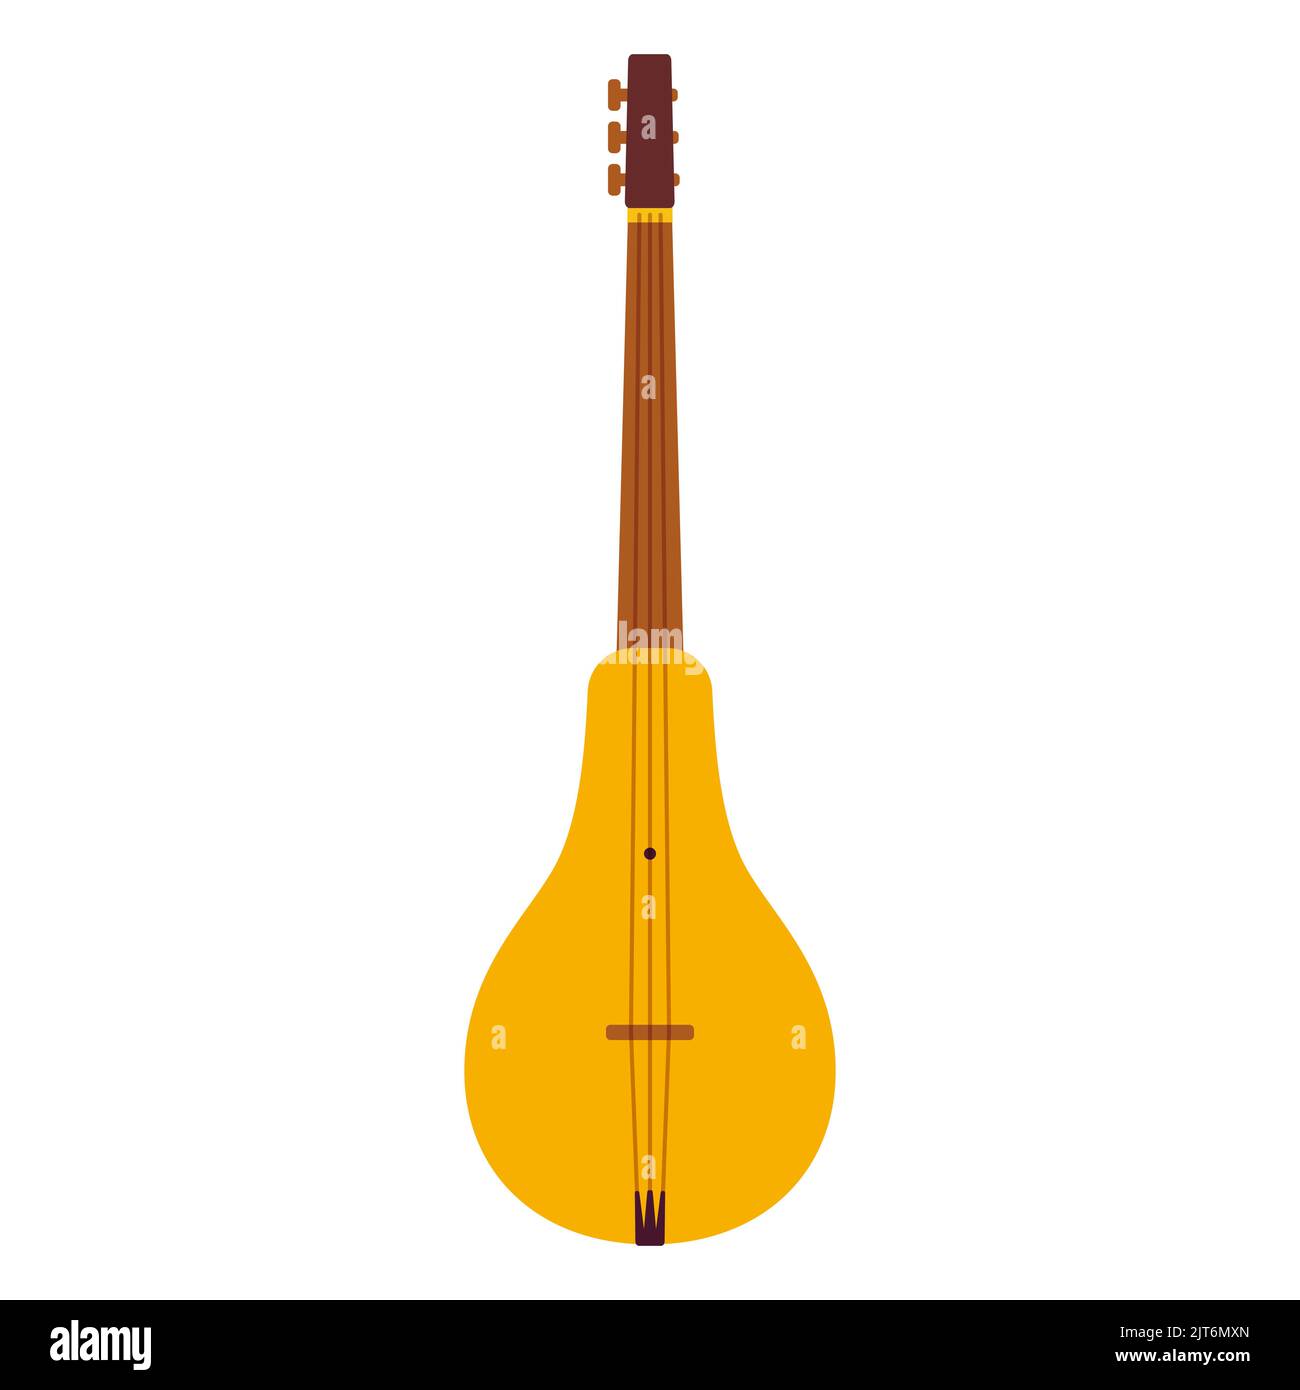 Komuz, instrument de musique traditionnel kirghize à cordes. Illustration de clip art vectoriel de dessin animé plat. Illustration de Vecteur